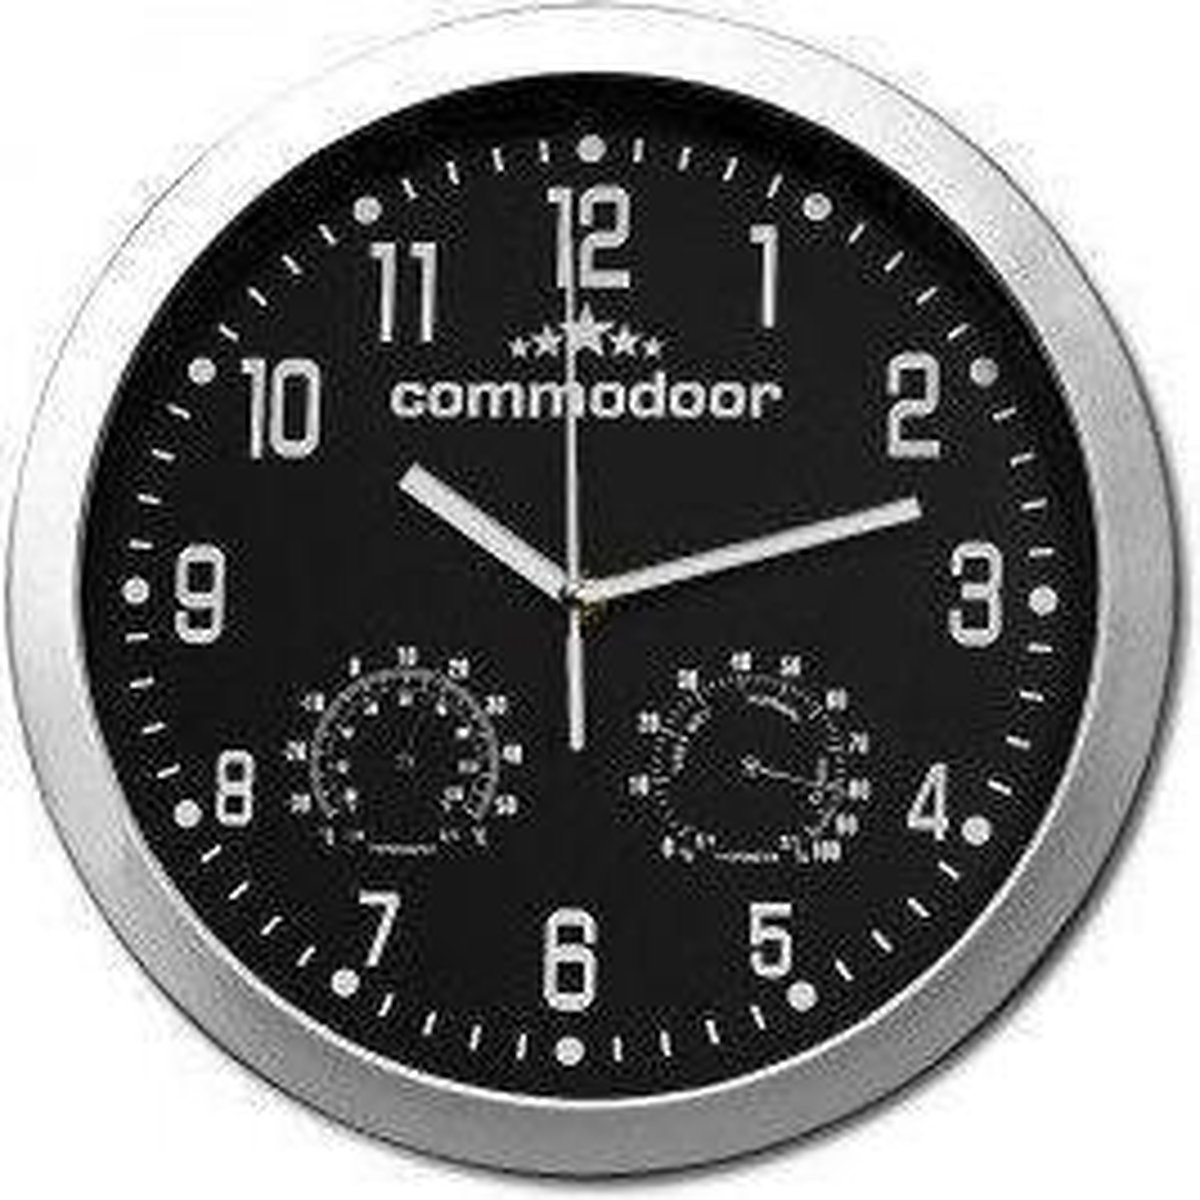 Commodoor - Klok - Rond - metaal - Ø30 cm - Zwart/Wit | bol.com